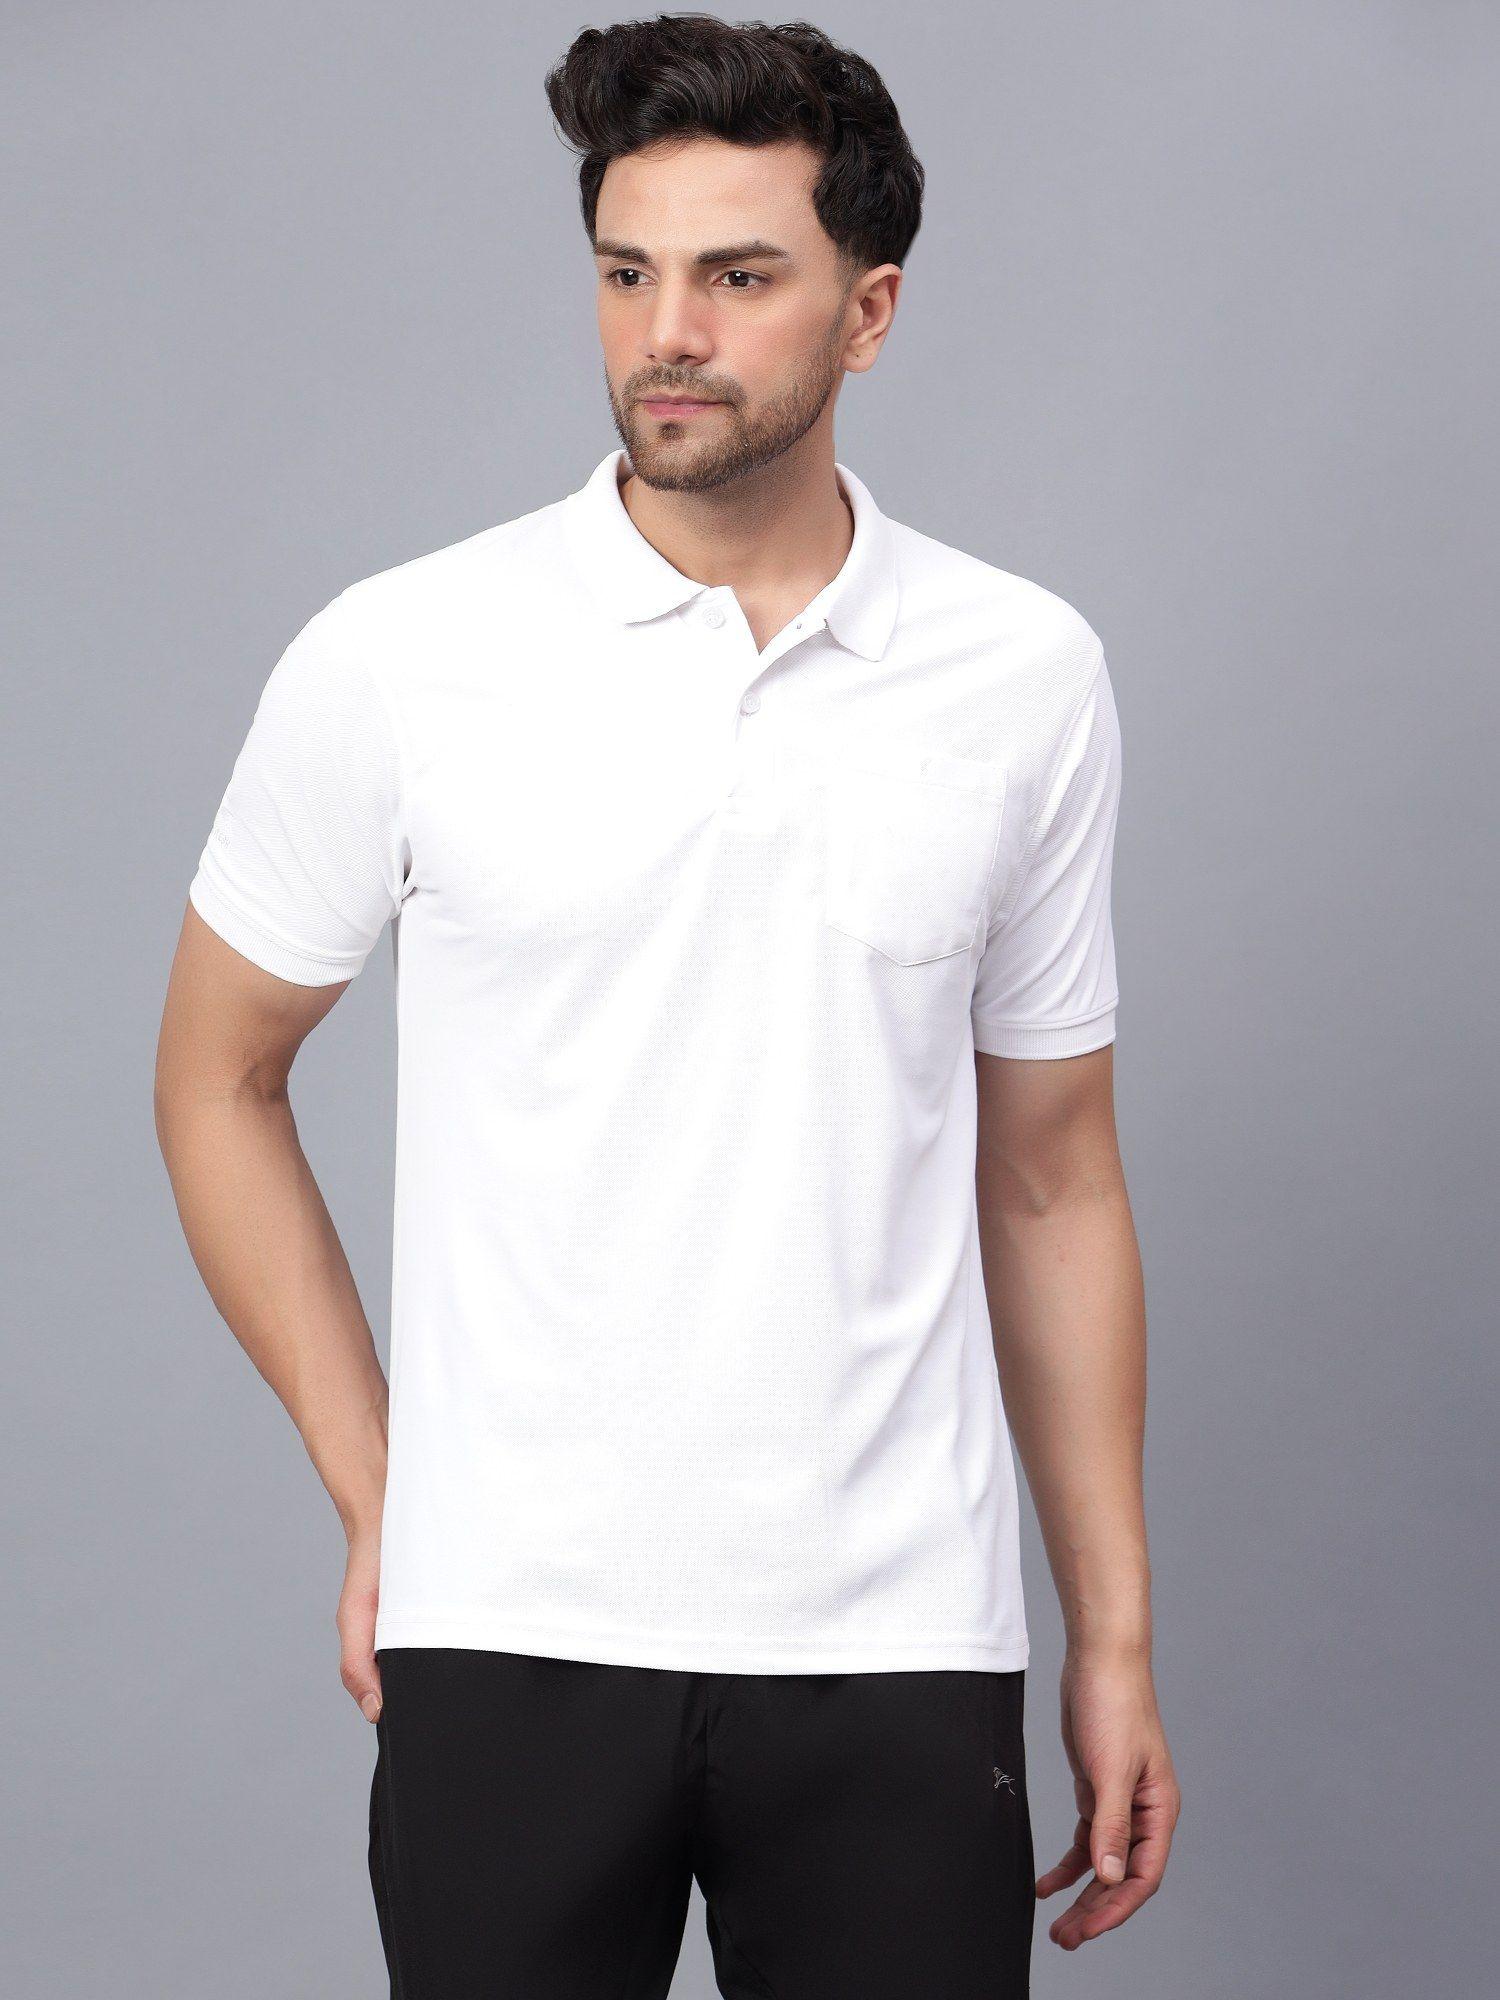 white polo t-shirts pique knit snp01a white